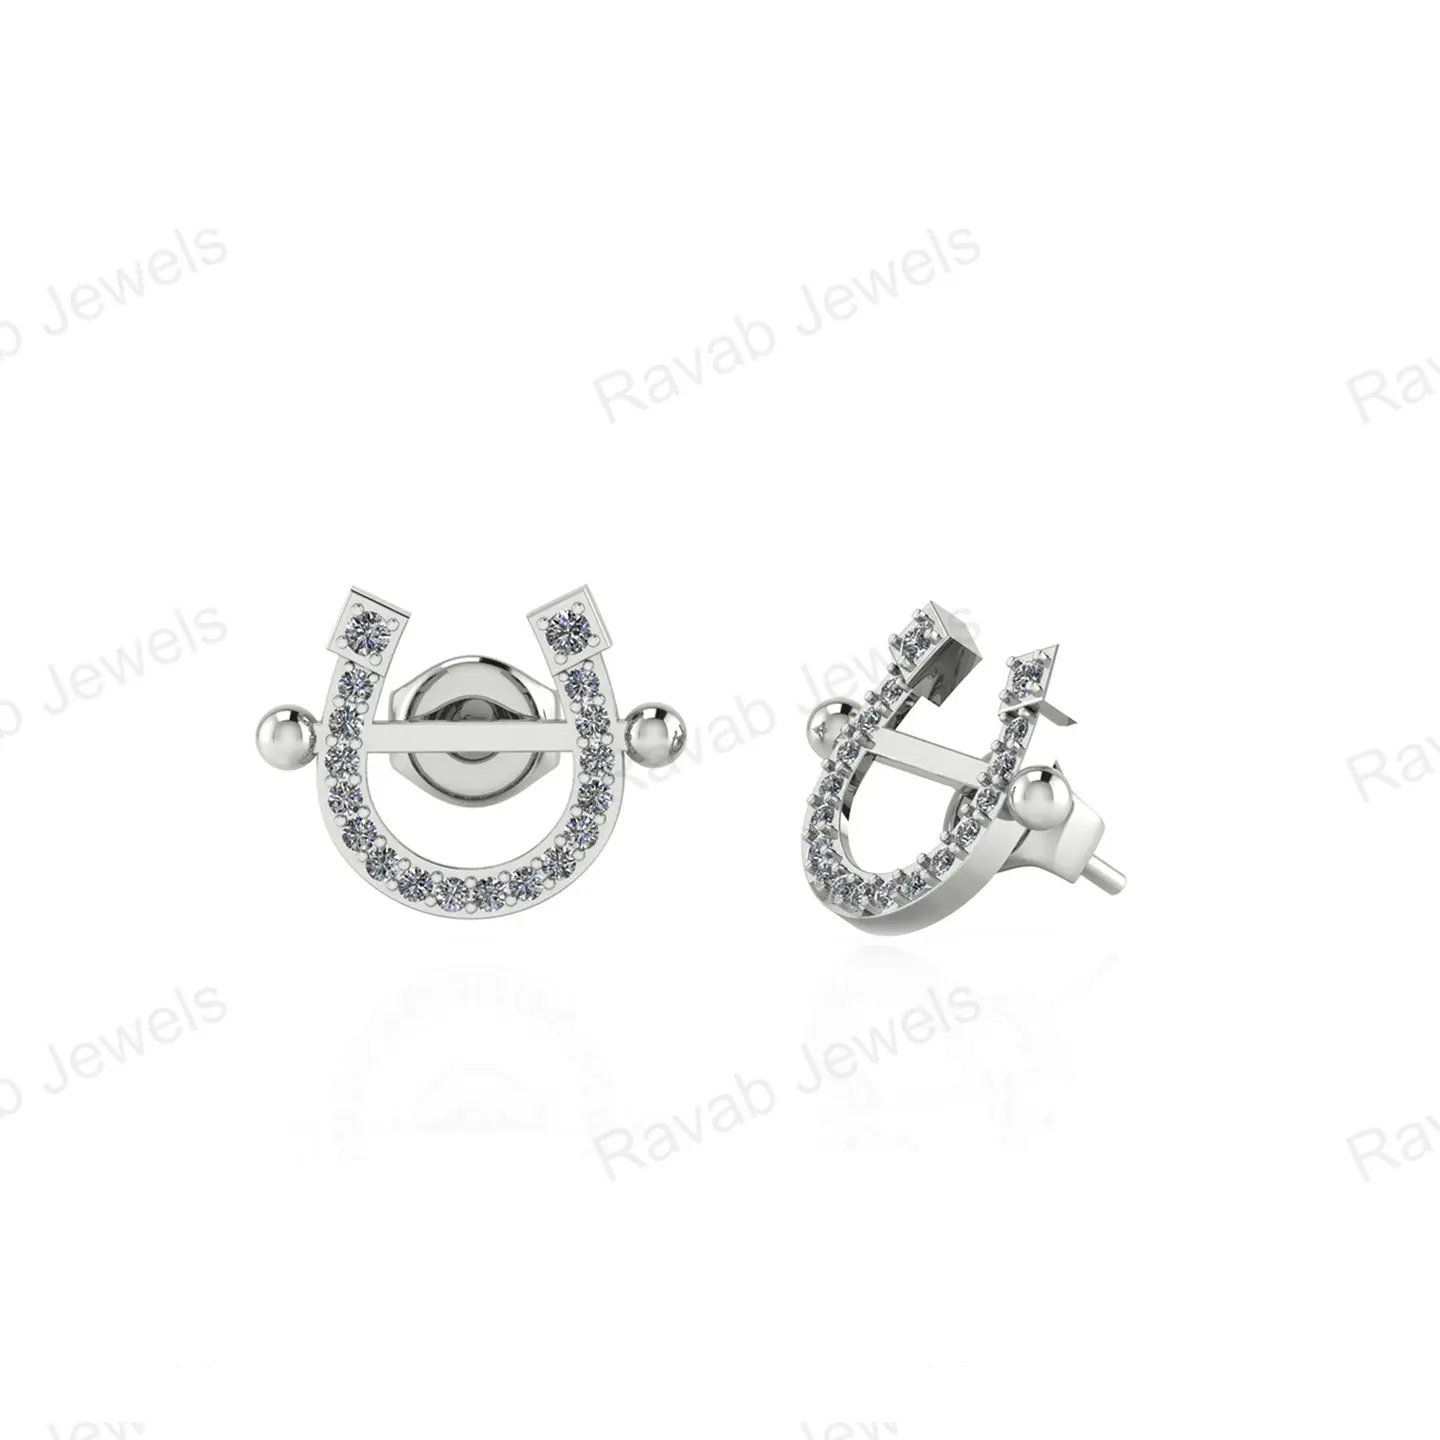 Bonne qualité prix usine Zircon bijoux en forme de U léger plaqué or en argent Sterling 925 femmes fabrication de bijoux personnalisés